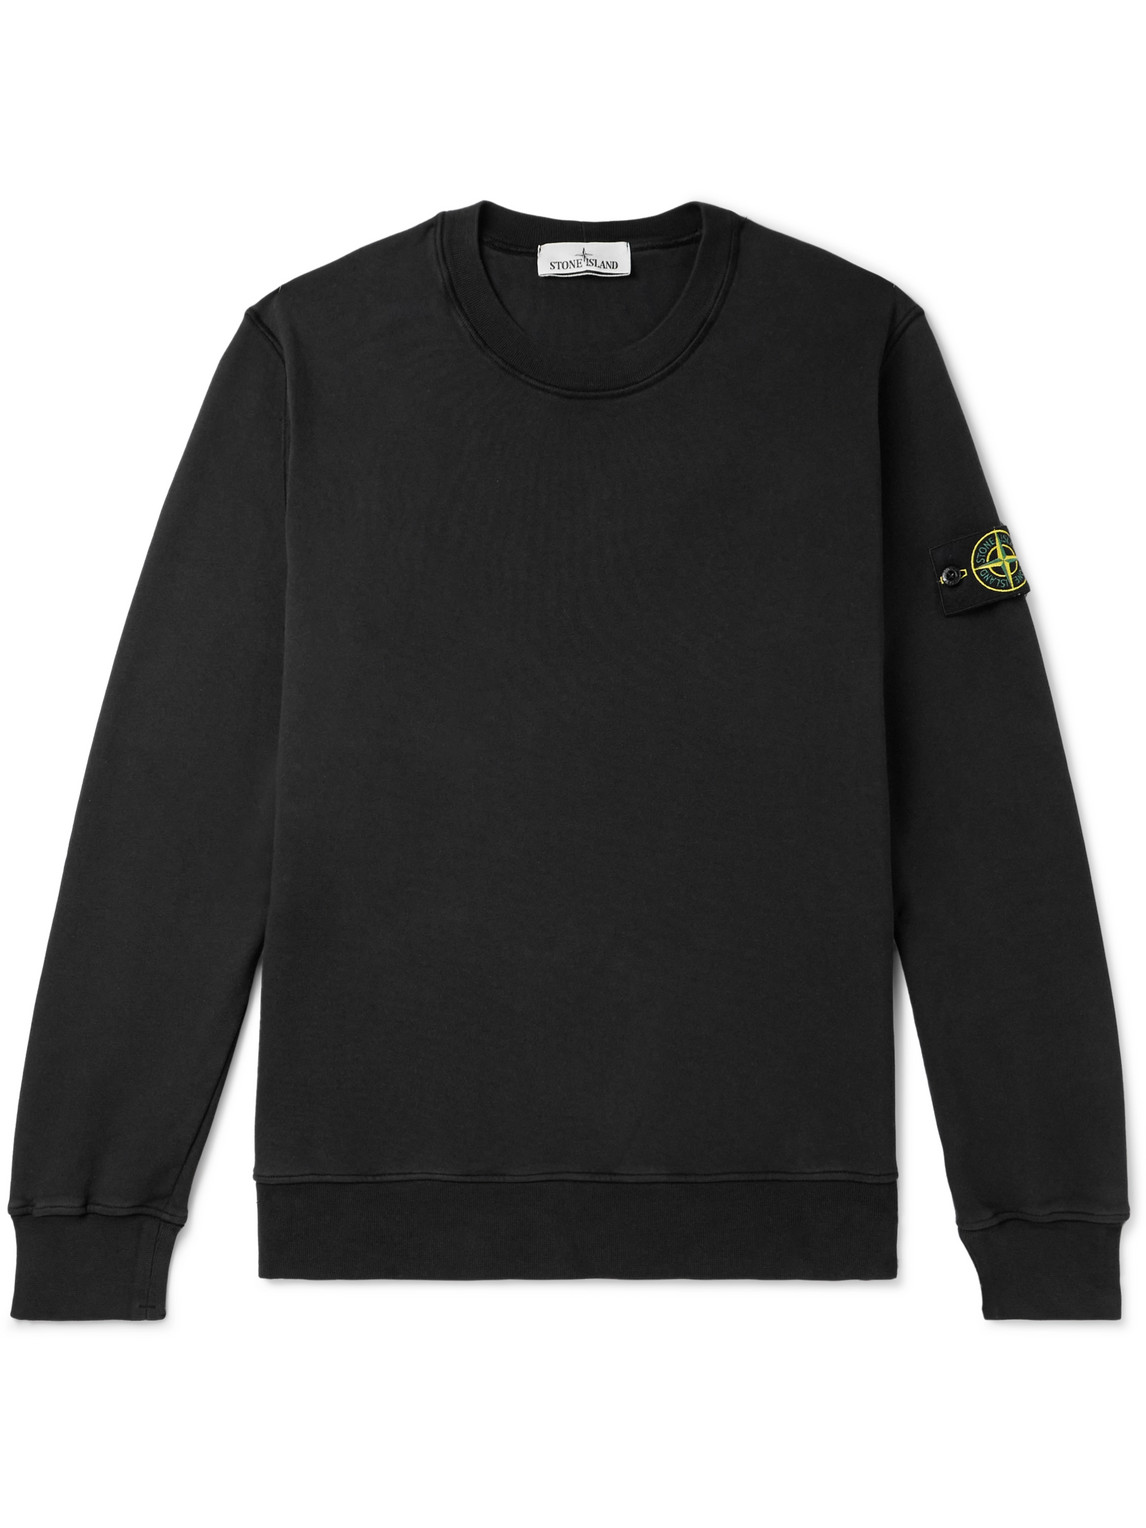 Stone Island - Logo-Appliquéd Garment-Dyed Cotton-Jersey Sweatshirt - Men - Black - XL von Stone Island